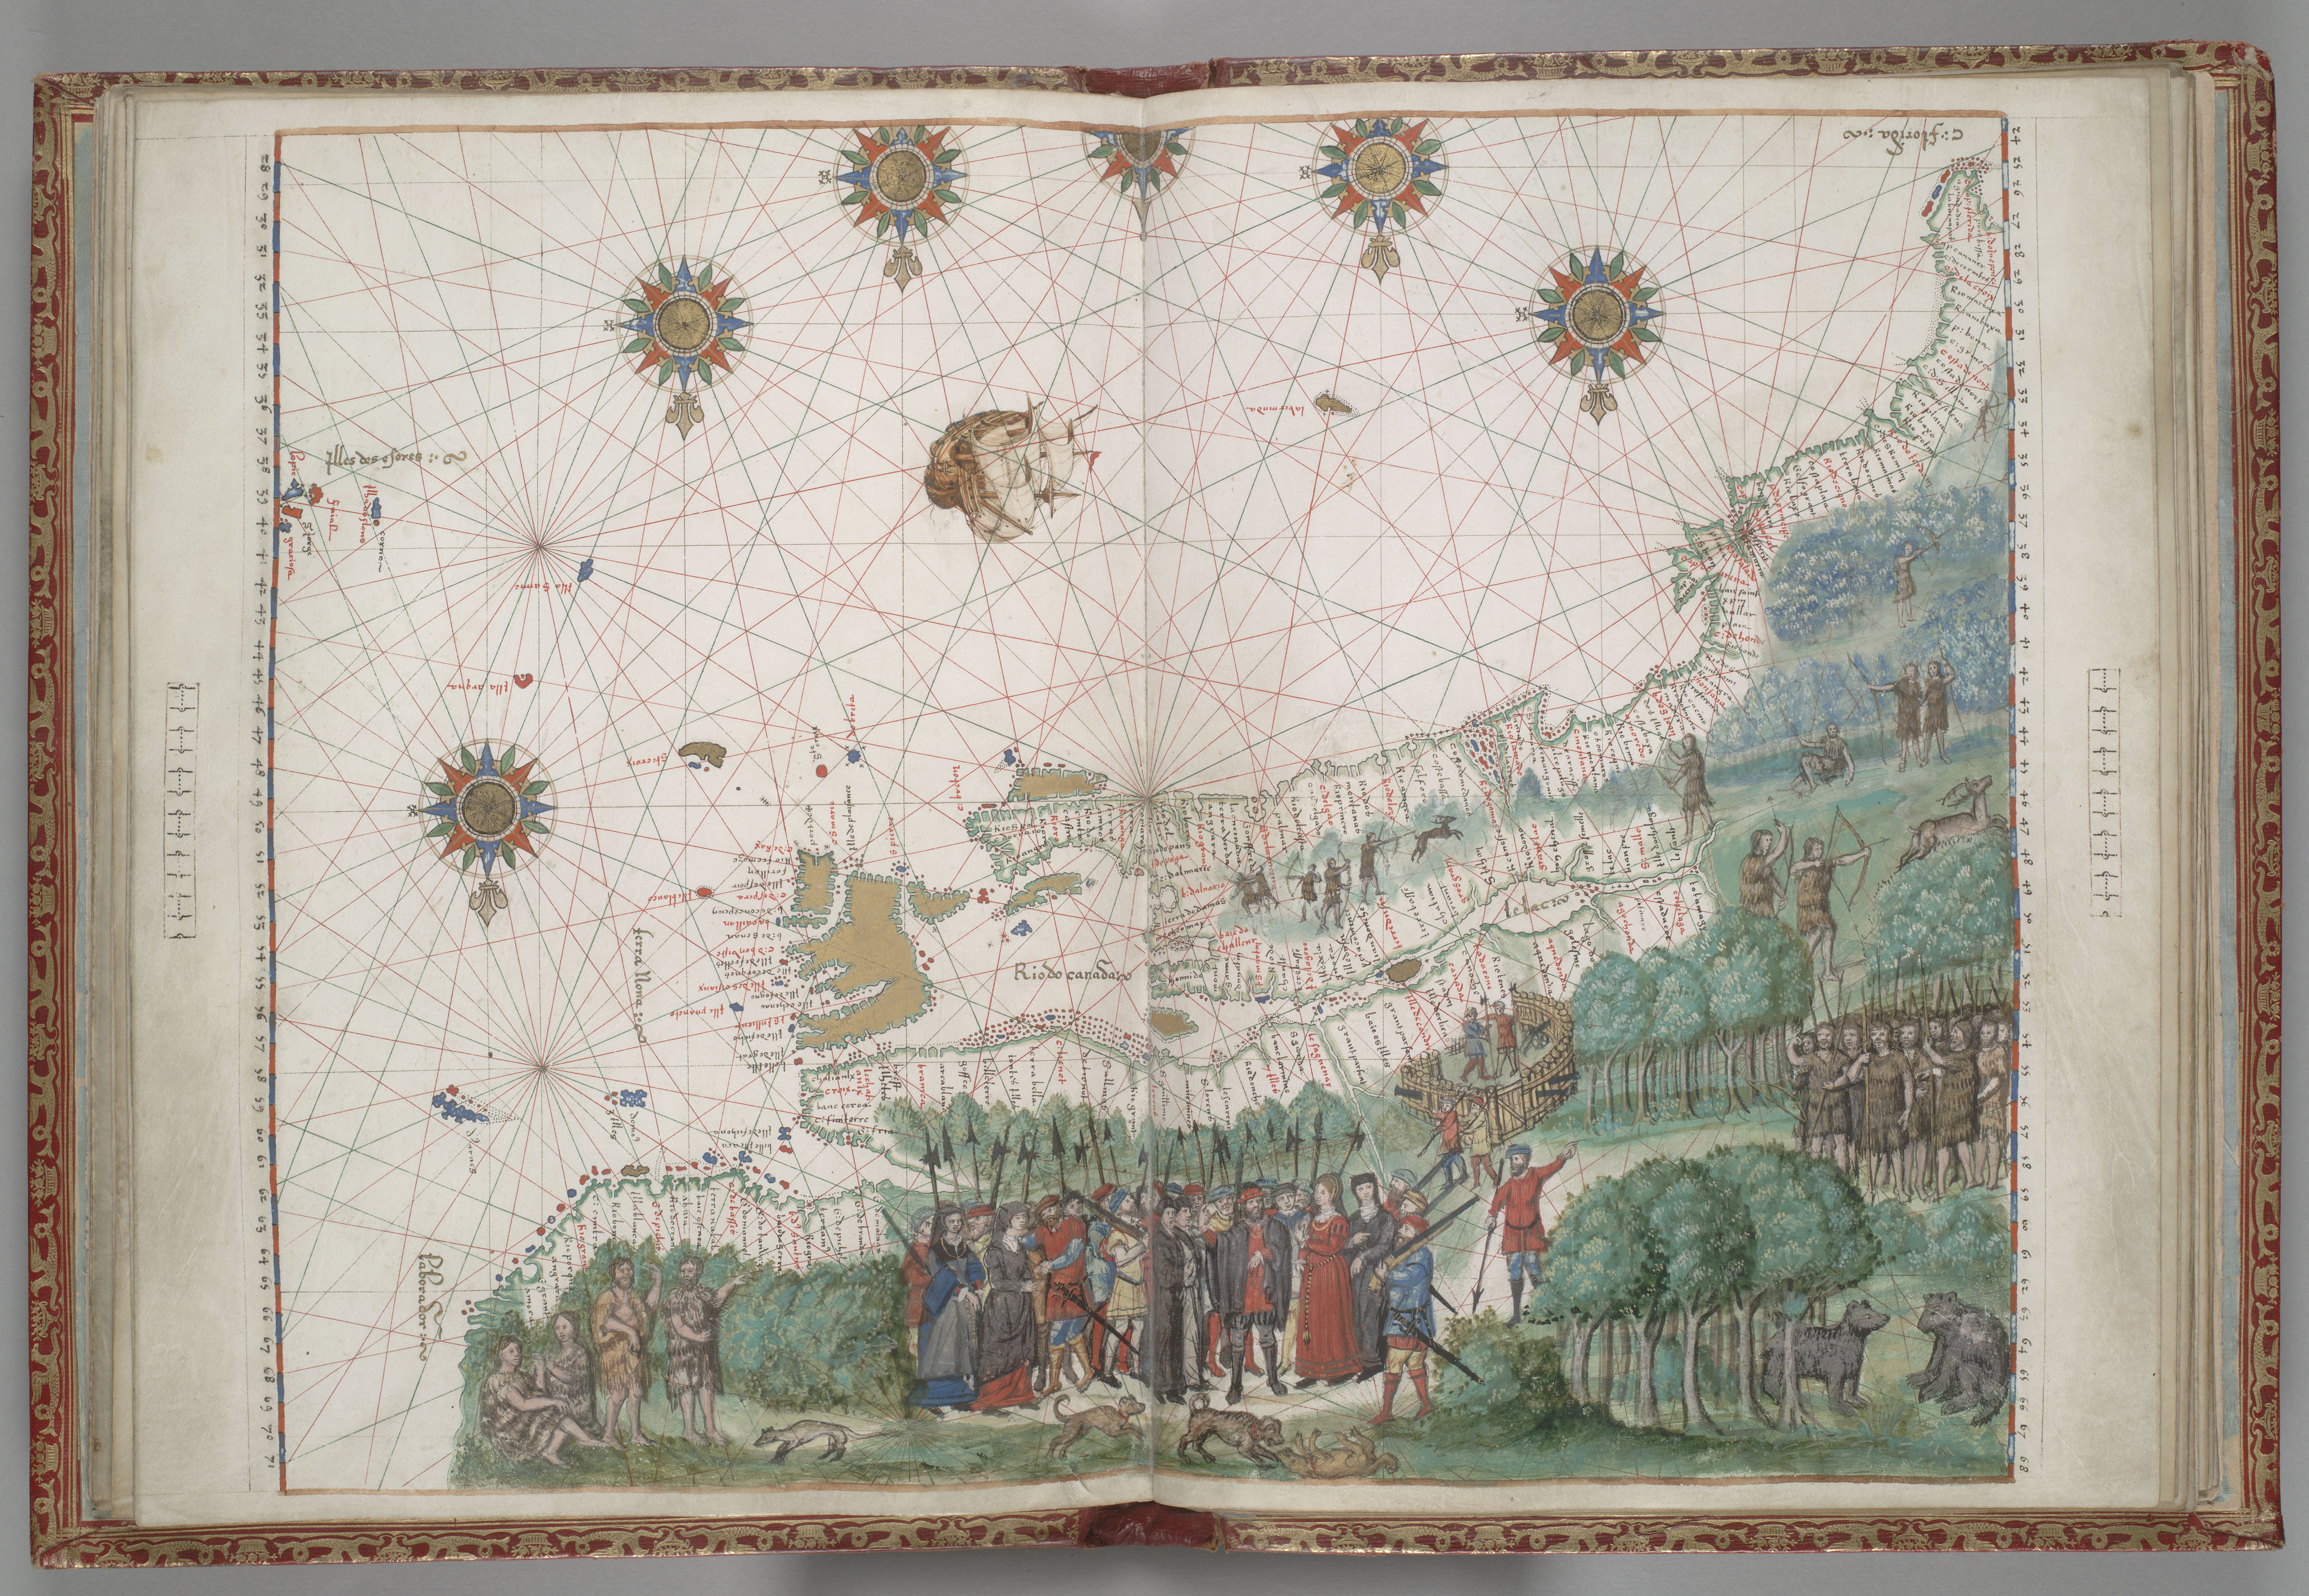 Représentation de la côte est de l’Amérique du Nord datant de 1547. Le cartographe a placé le Nord en bas du dessin. Cartier serait un des personnages.